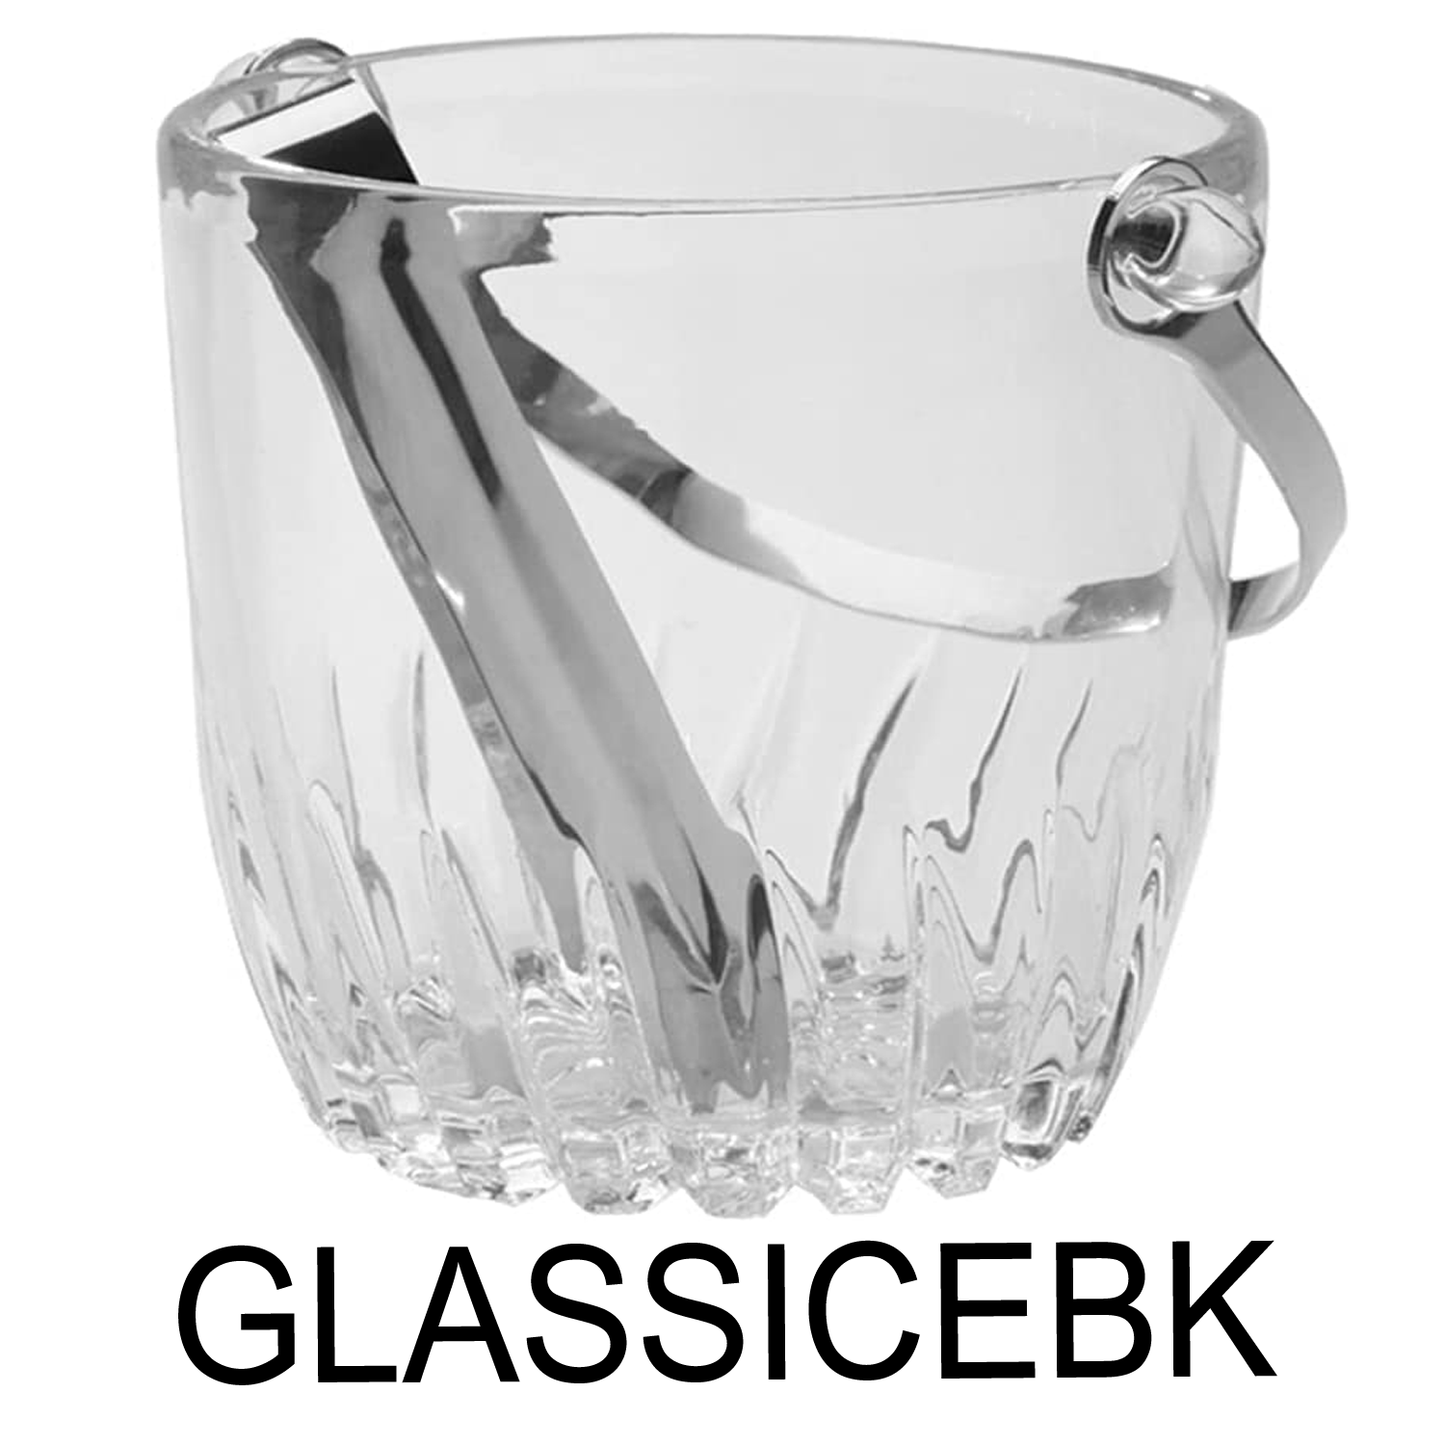 Glass Ice Bucket With Metal Tong & Handle